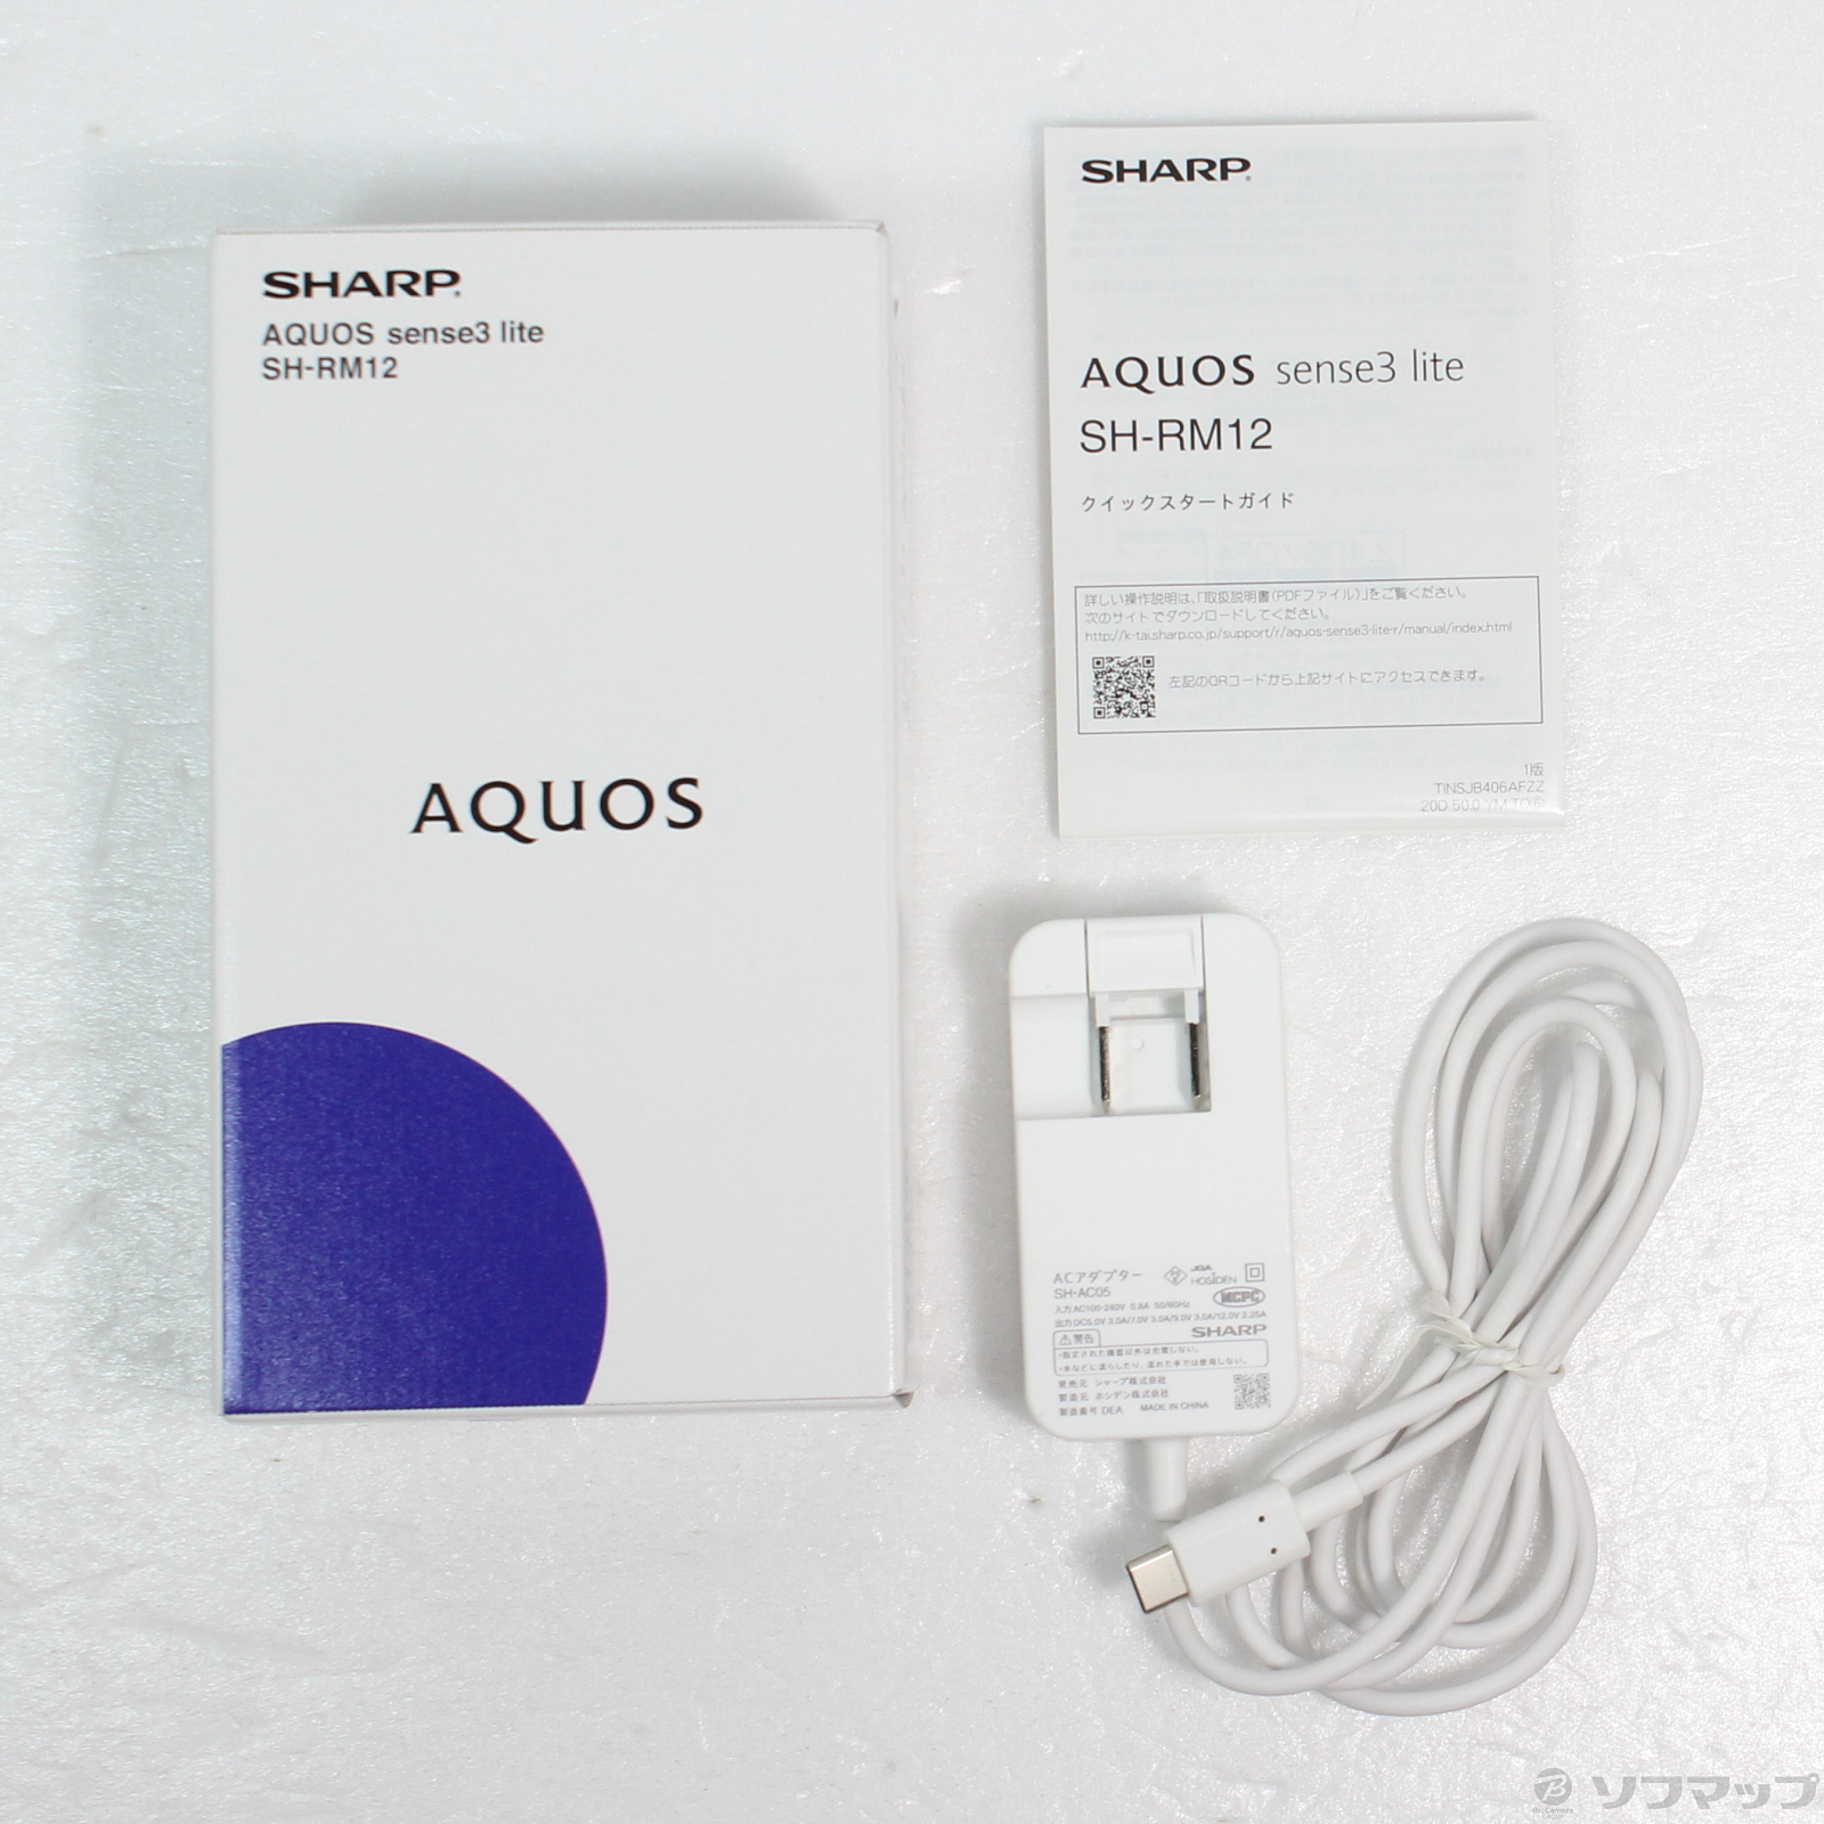 中古】AQUOS sense3 lite 楽天版 64GB ブラック SH-RM12 SIMフリー